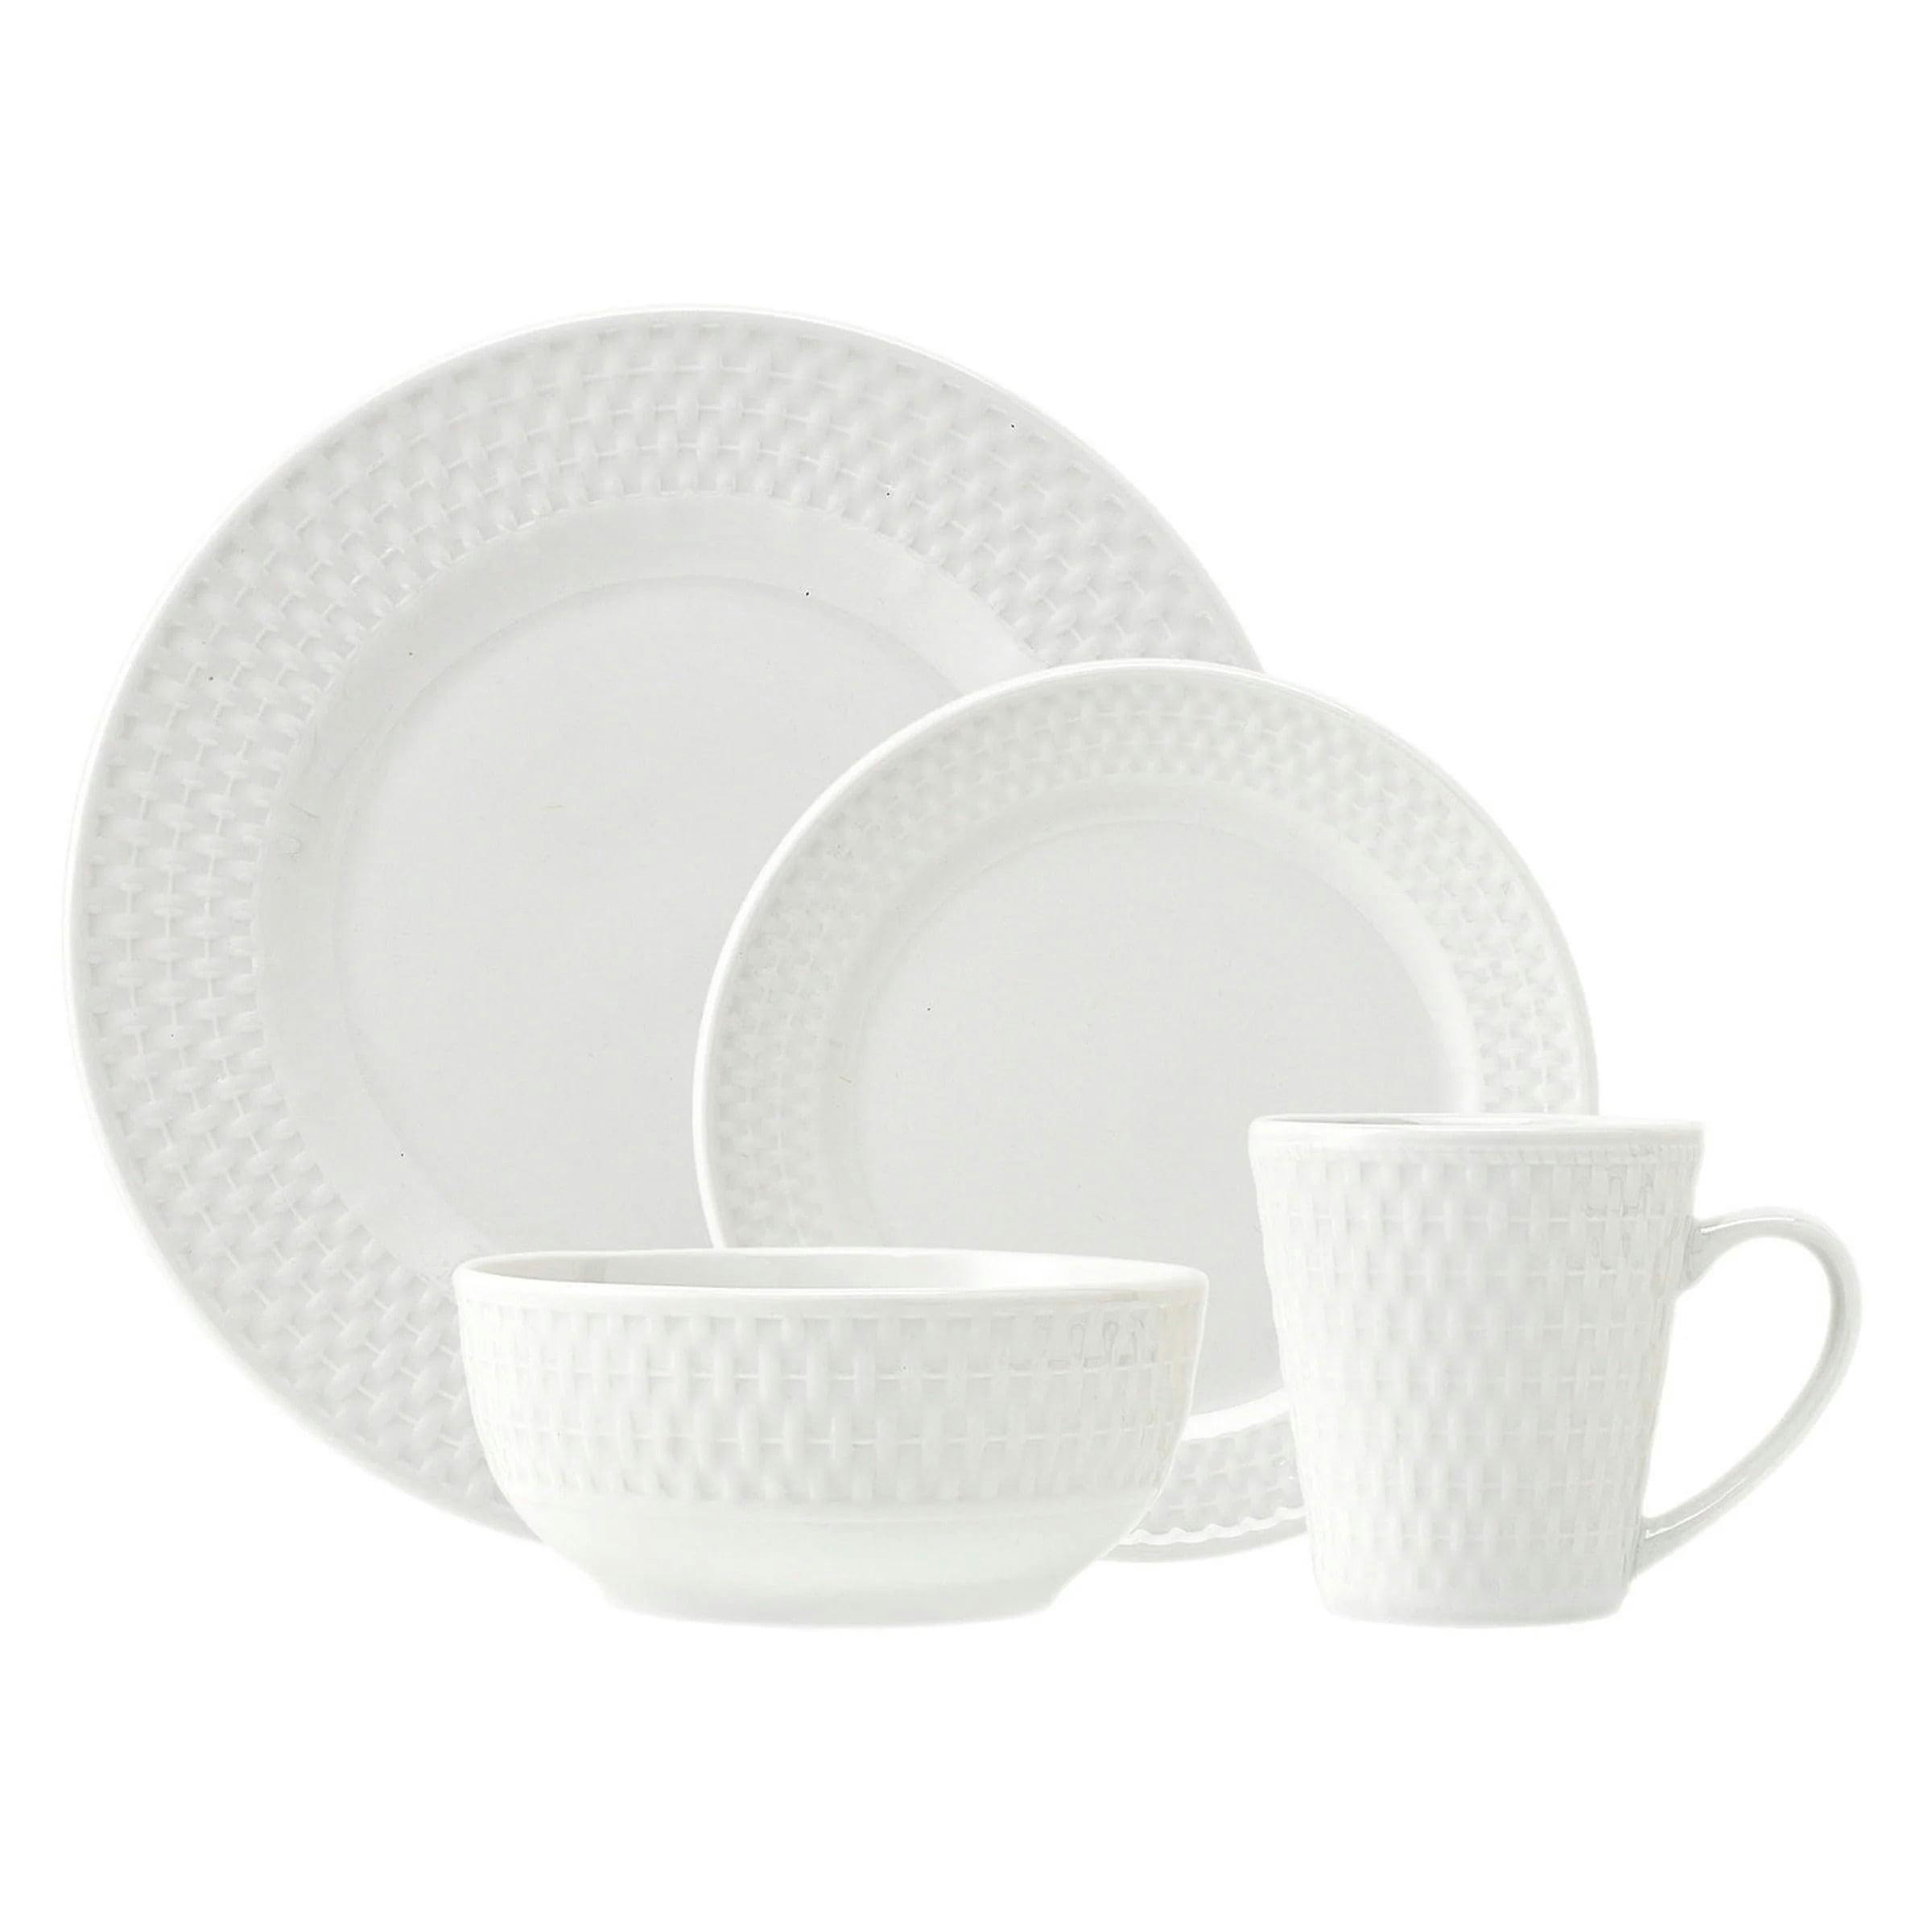 Elegant White Porcelain 16-Piece Dinnerware Set for 4